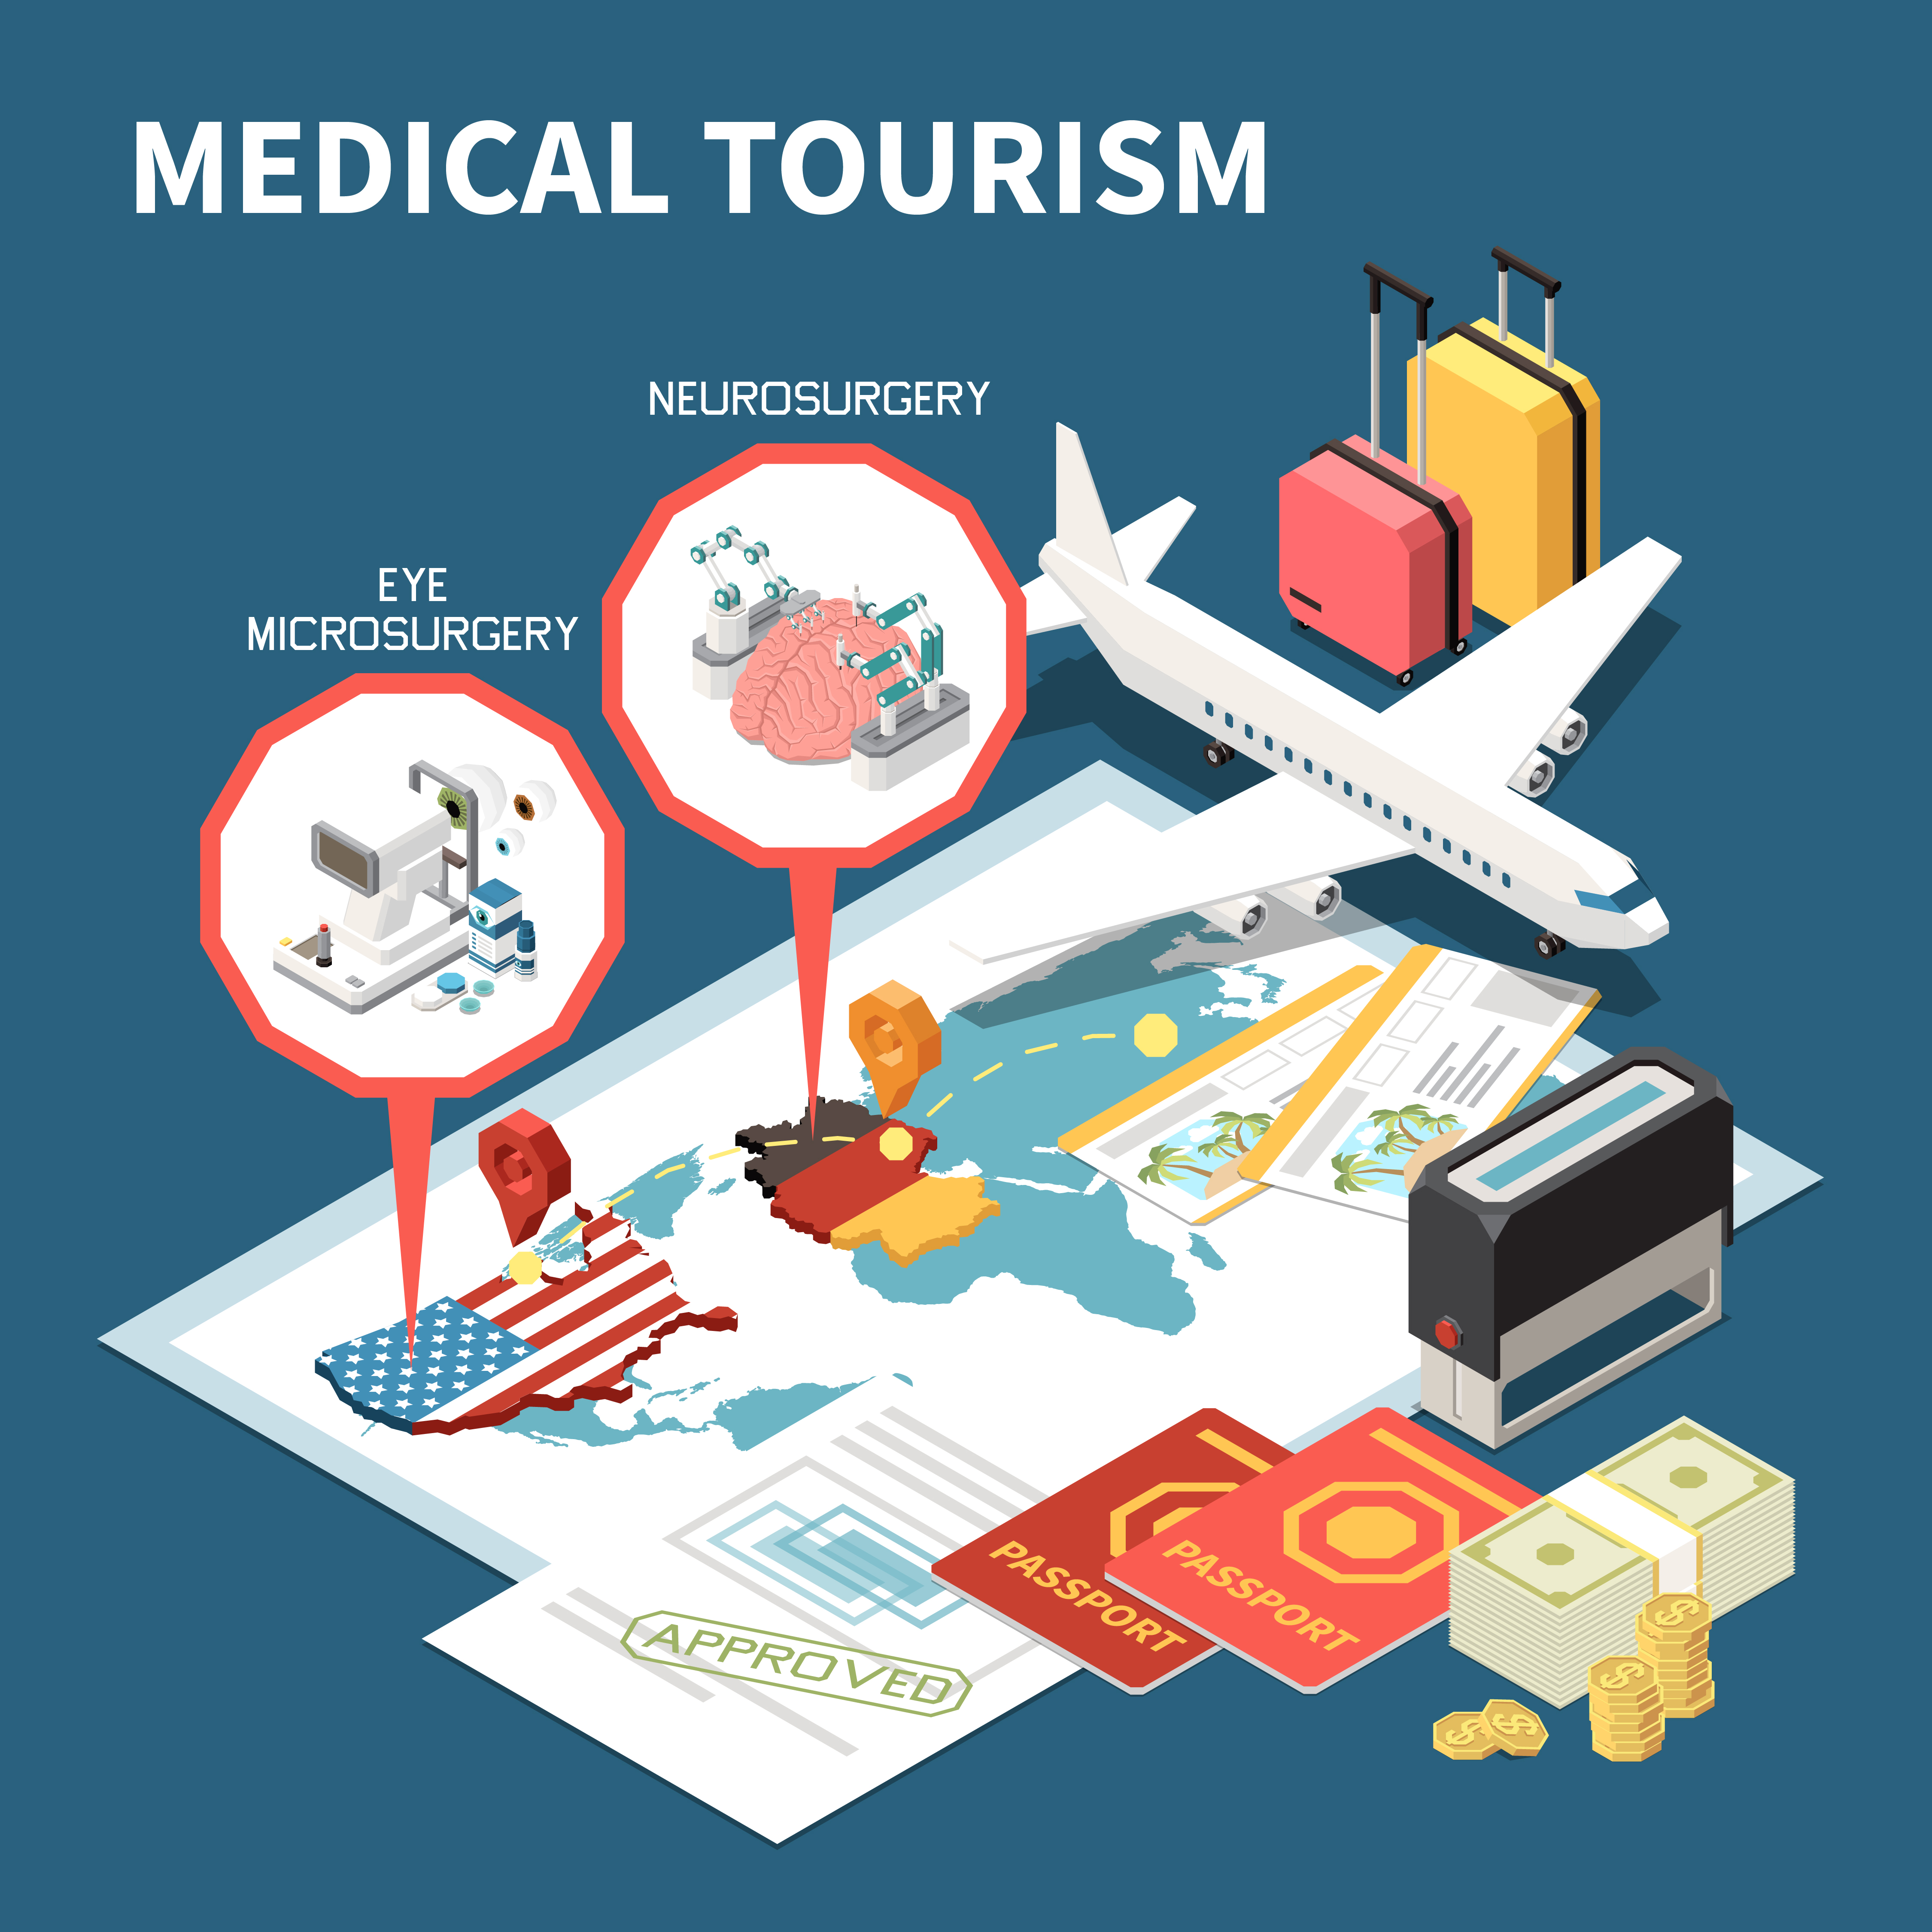 การท่องเที่ยวเชิงการแพทย์หมายถึงการเดินทางไปต่างประเทศเพื่อรับการรักษาทางการแพทย์